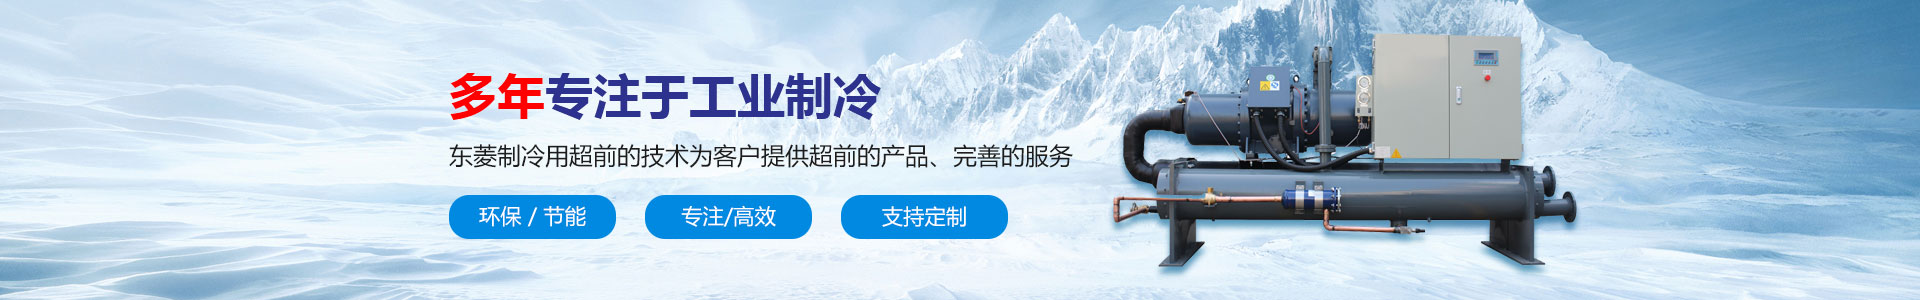 深圳市东菱制冷设备有限公司_合作伙伴